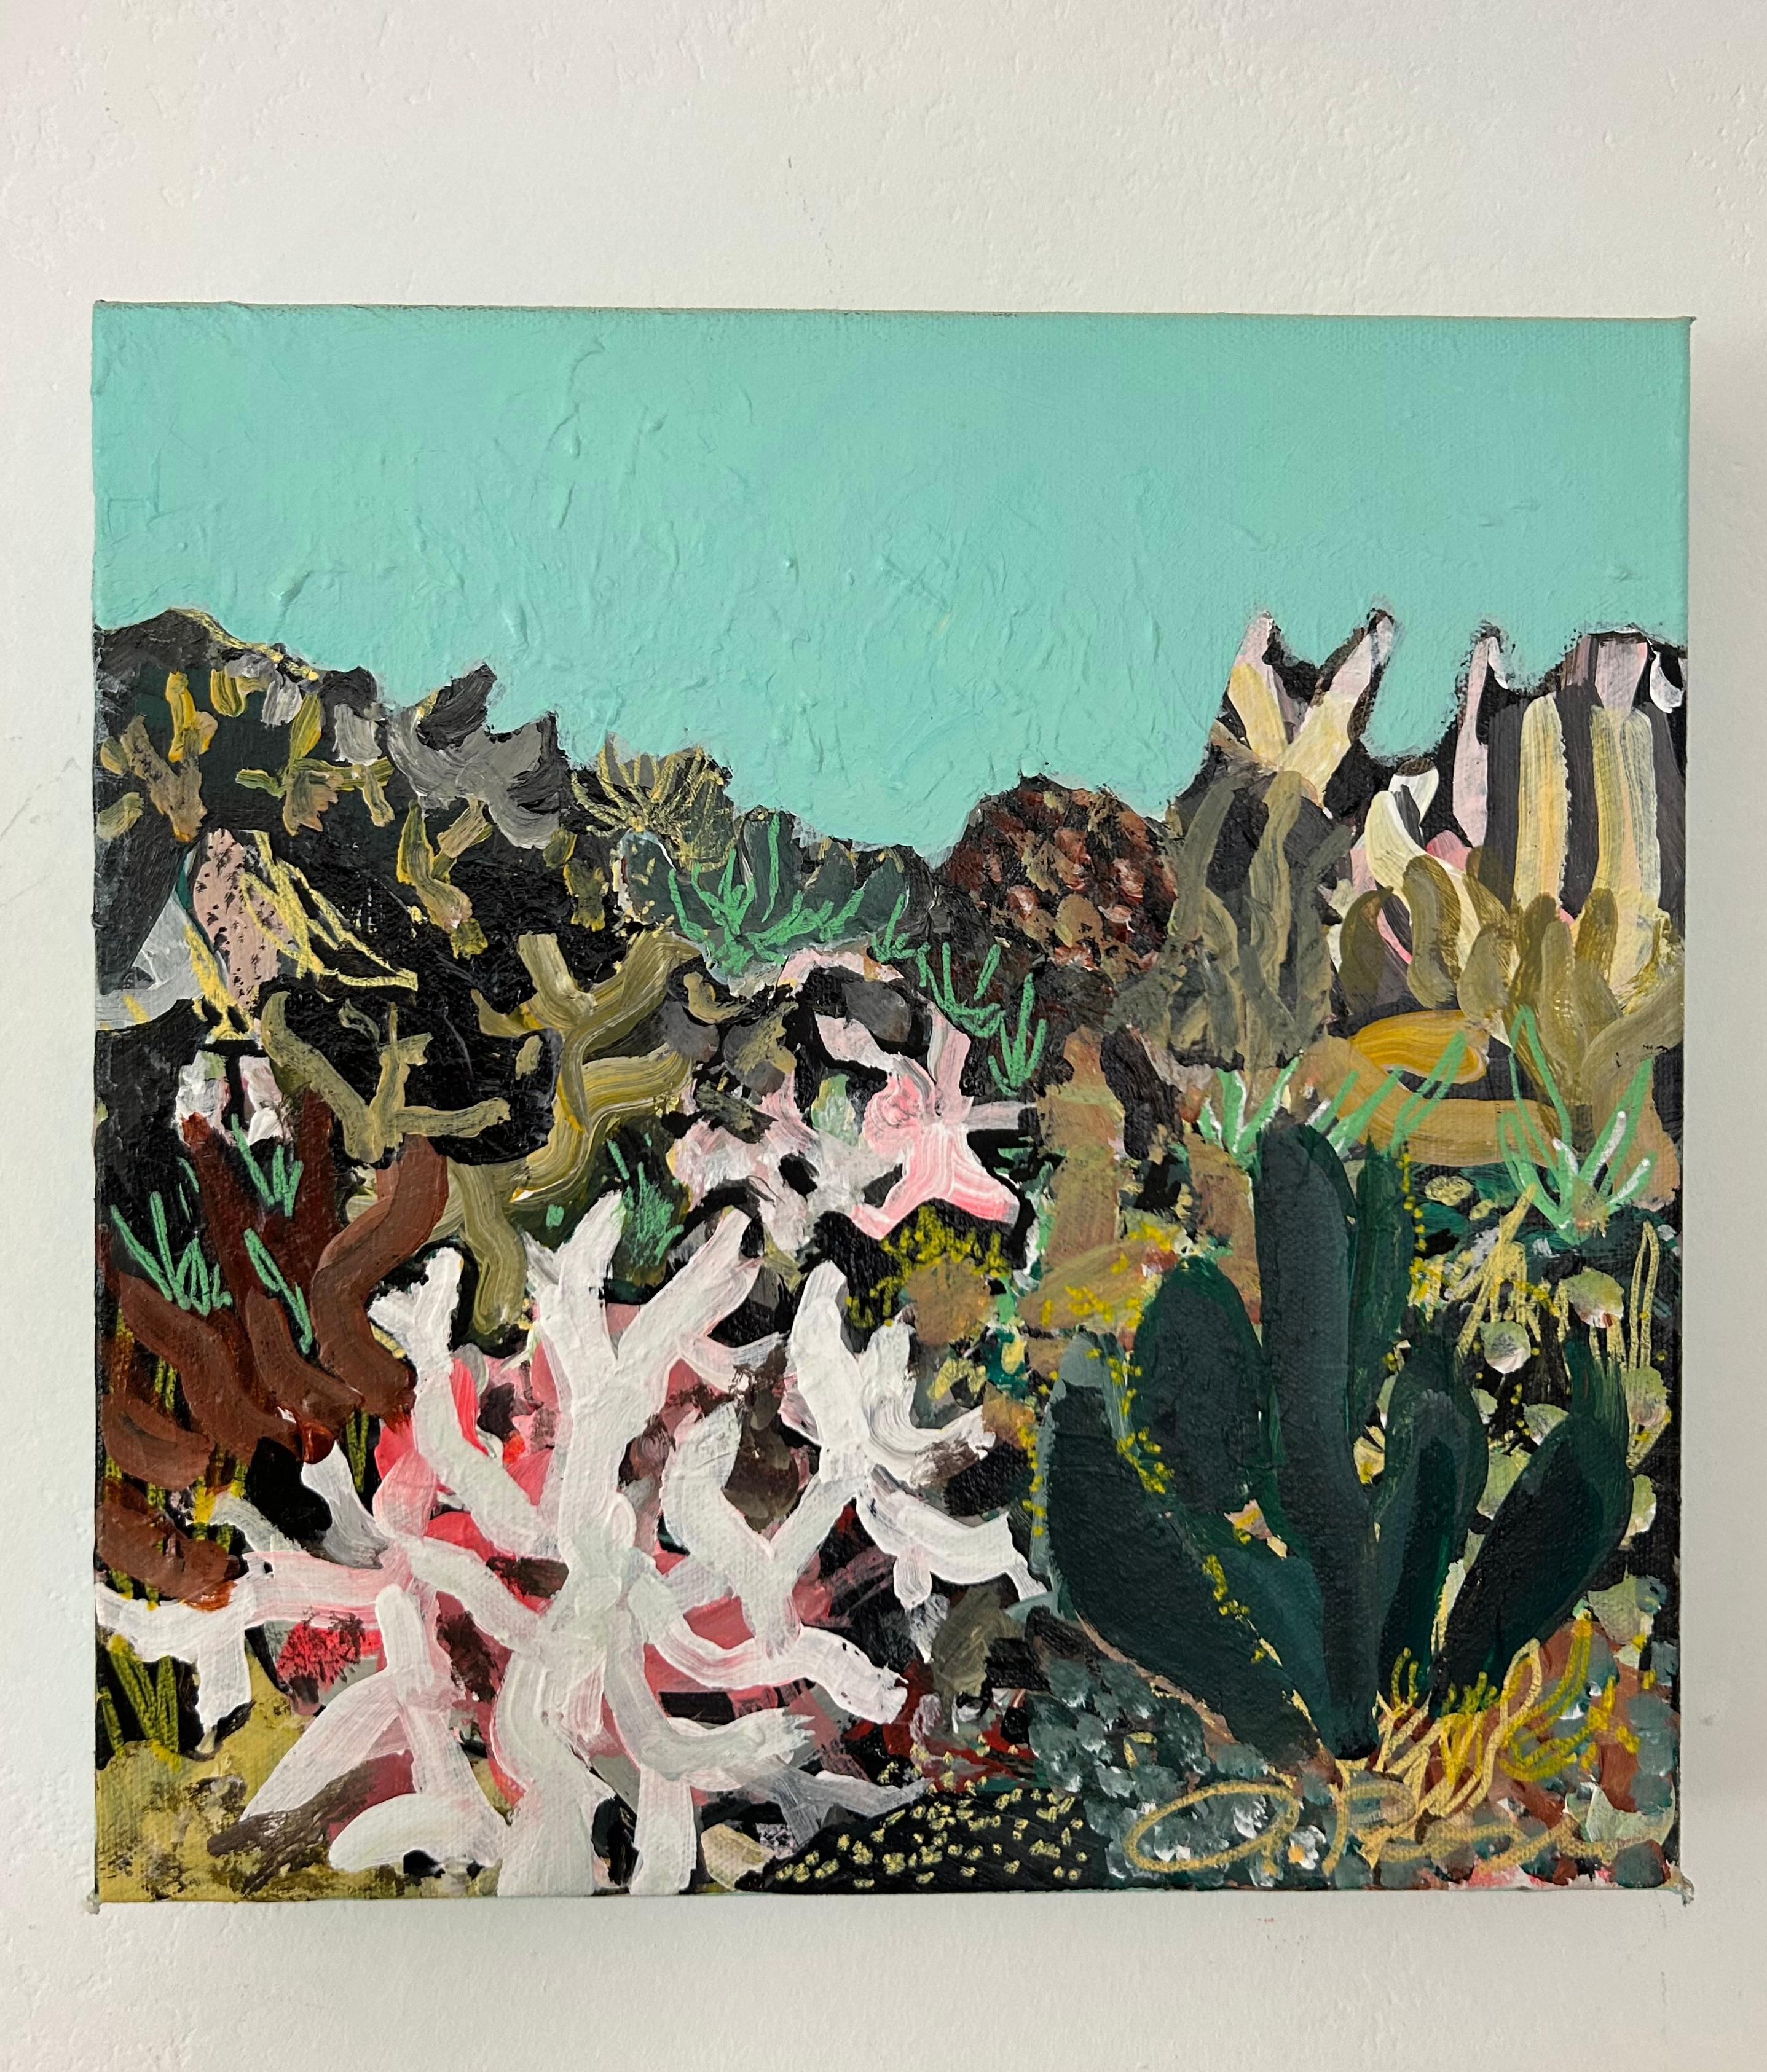 <p>Kommentare der Künstlerin<br />Inspiriert durch ihre tiefe Vorliebe für Meerespflanzen, malt die Künstlerin Autumn Rose einen temperamentvollen Unterwassergarten mit Korallen, Seetang und Anemonen. 